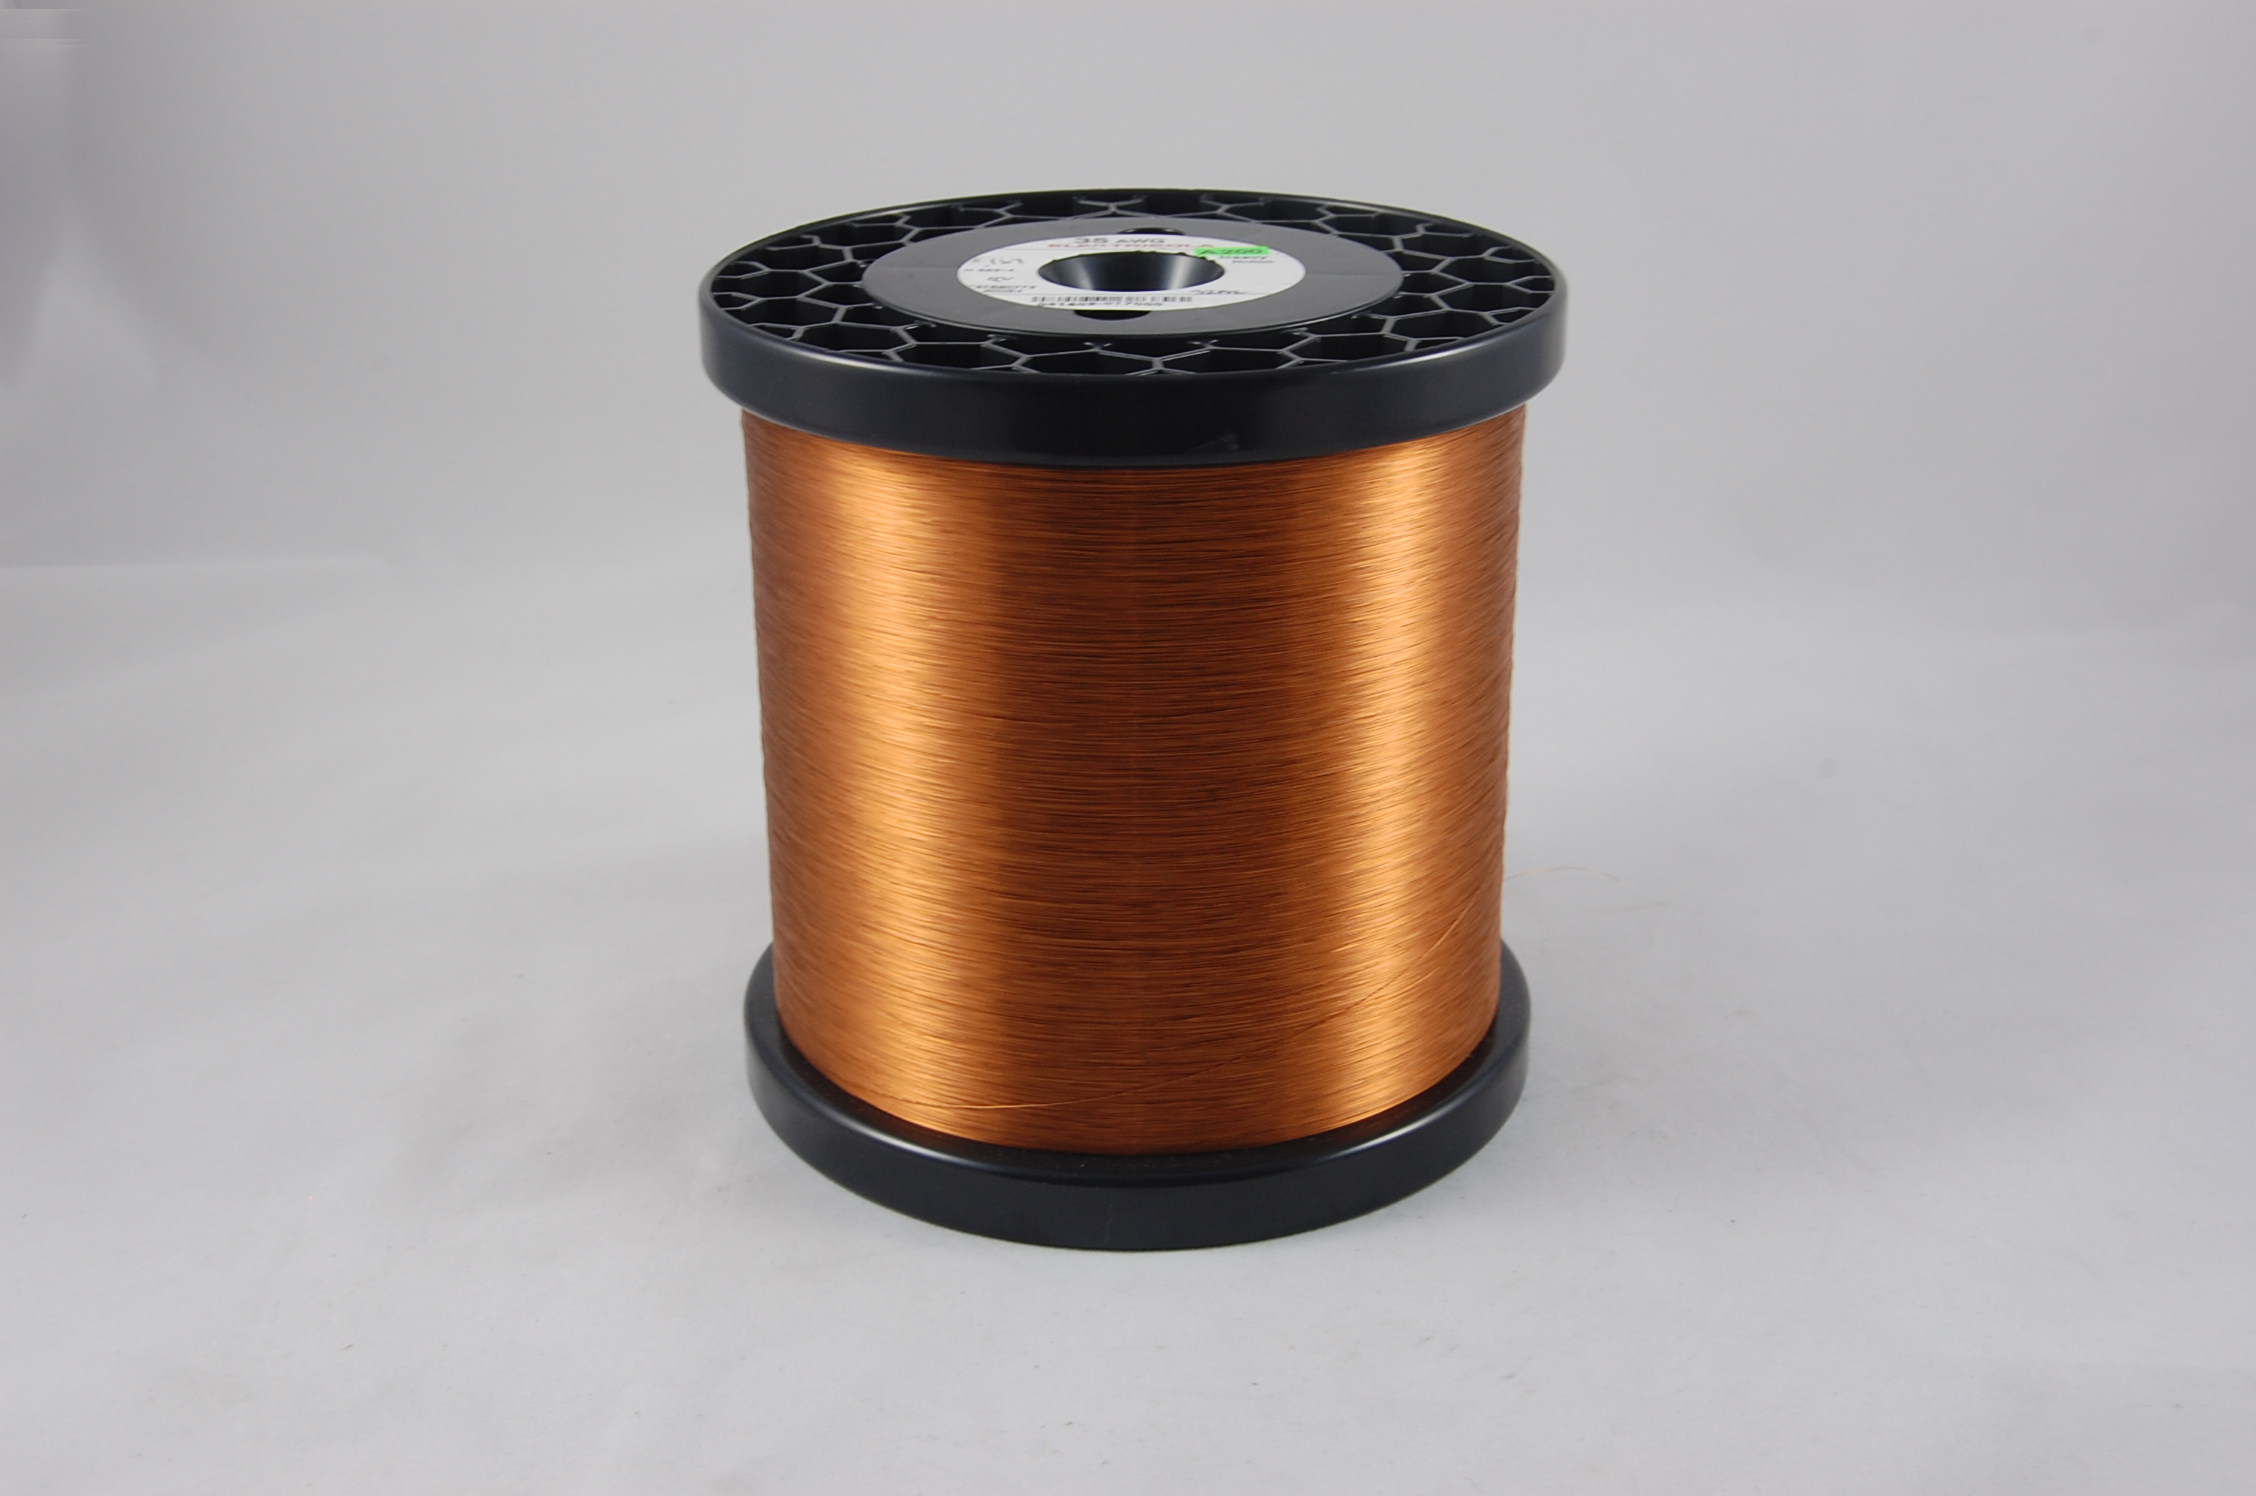 #38 Heavy Amidester 200 Round MW 74 Copper Magnet Wire 200°C, copper,  14 LB 6" x 6" spool (average wght.)